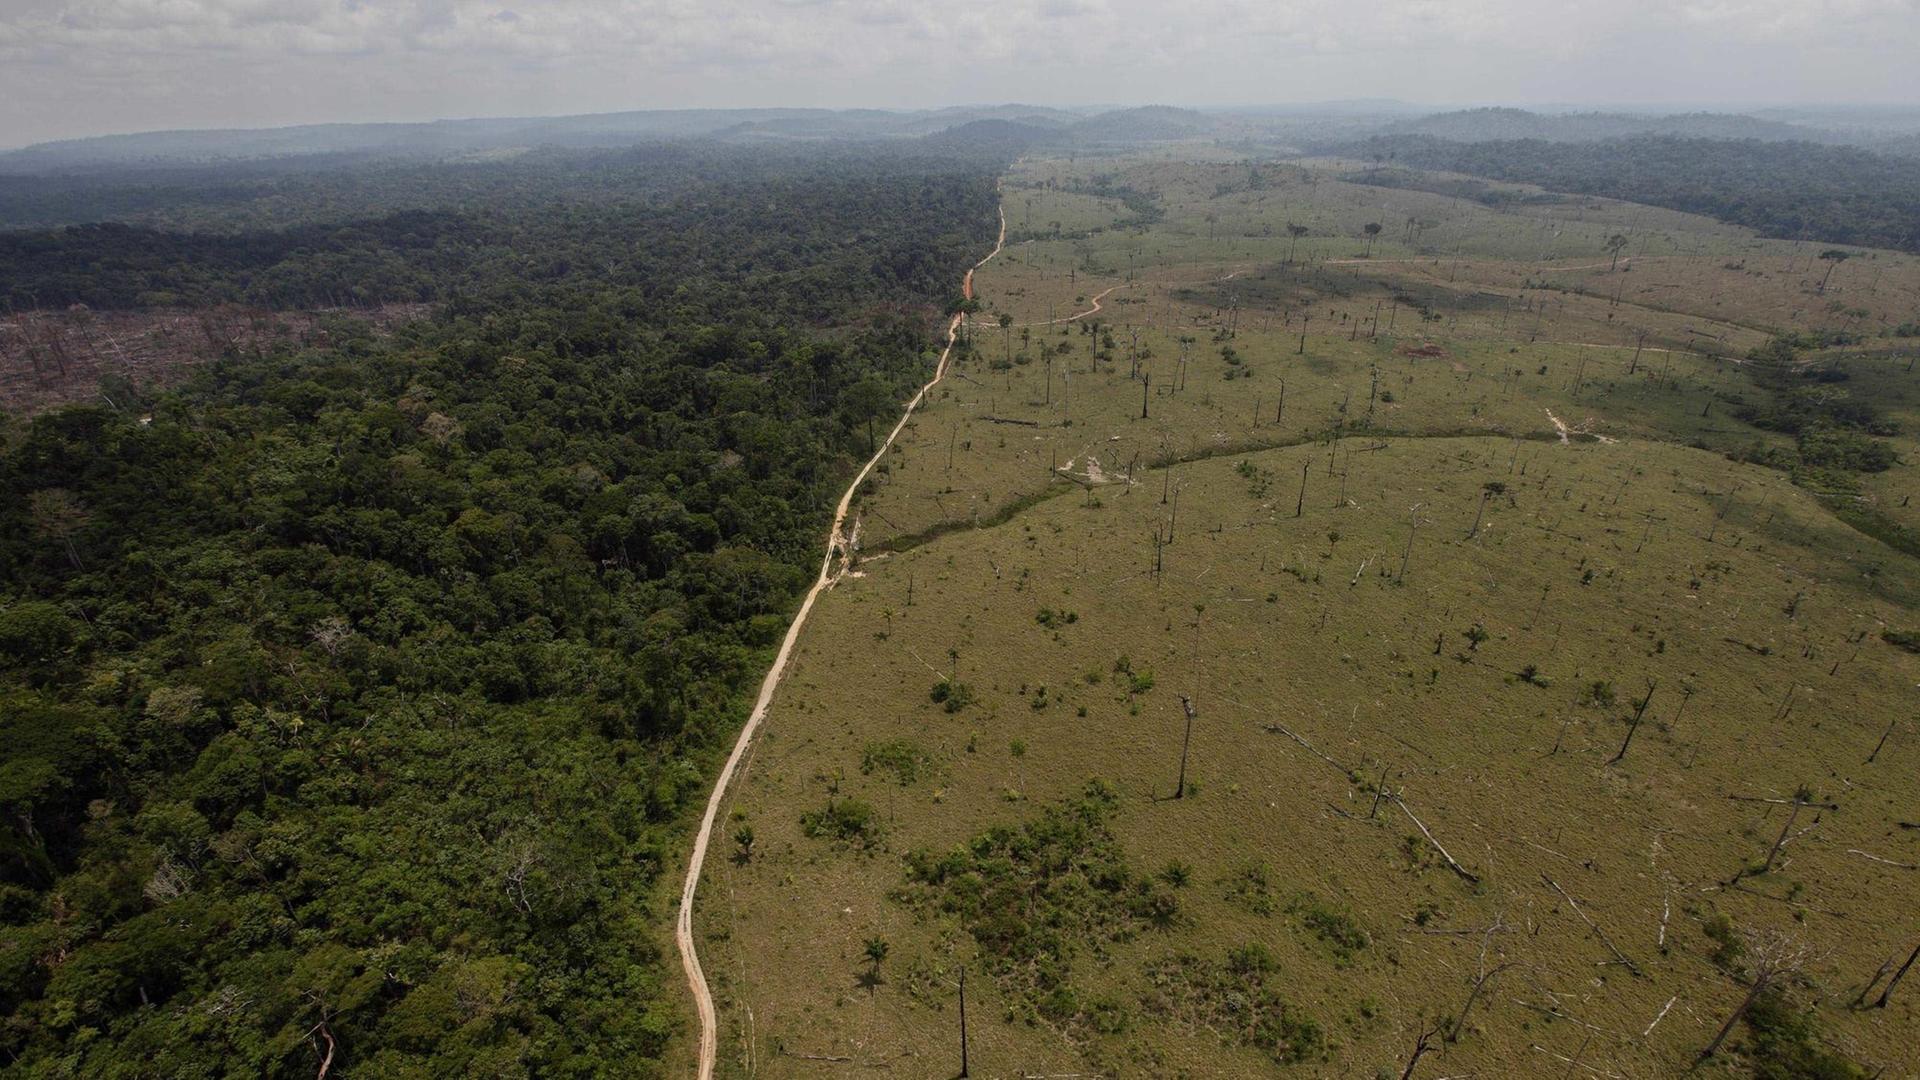 Luftaufnahme zeigt Abholzung im brasilianischen Regenwald entlang einer Straße, Foto vom 15. September 2009